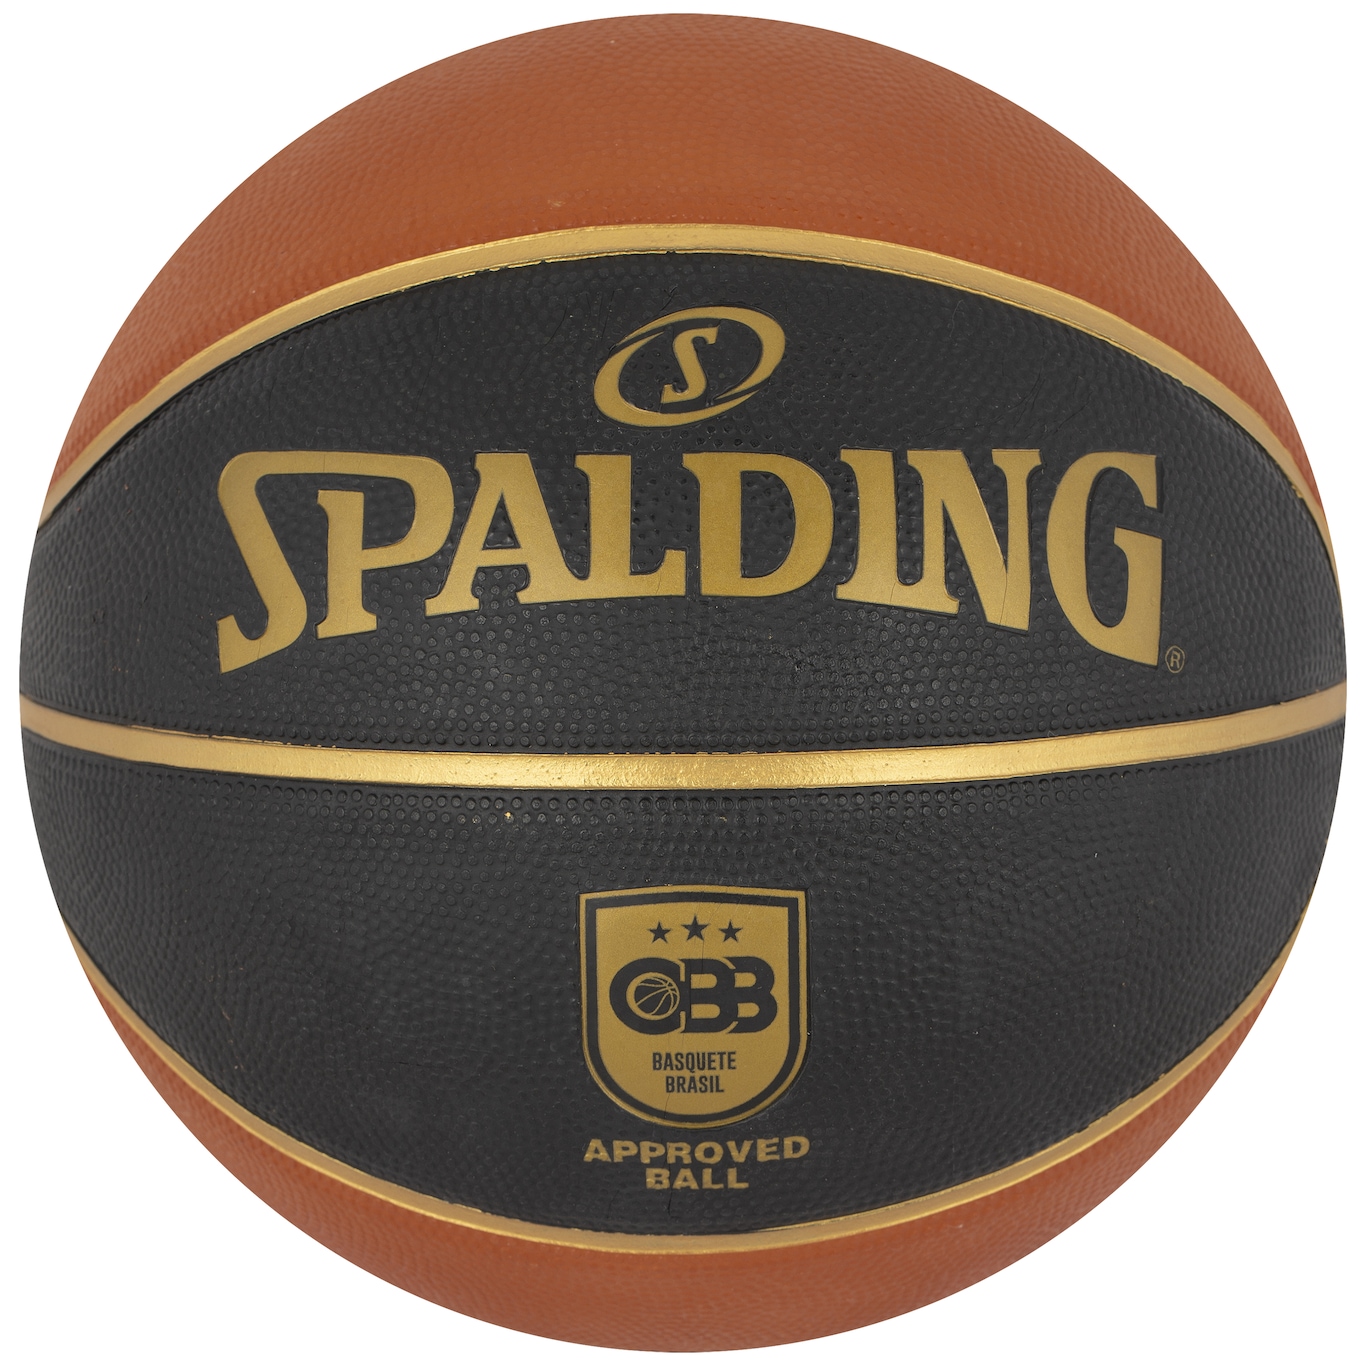 Bola de Basquete Spalding Varsity Tf-150 em Promoção